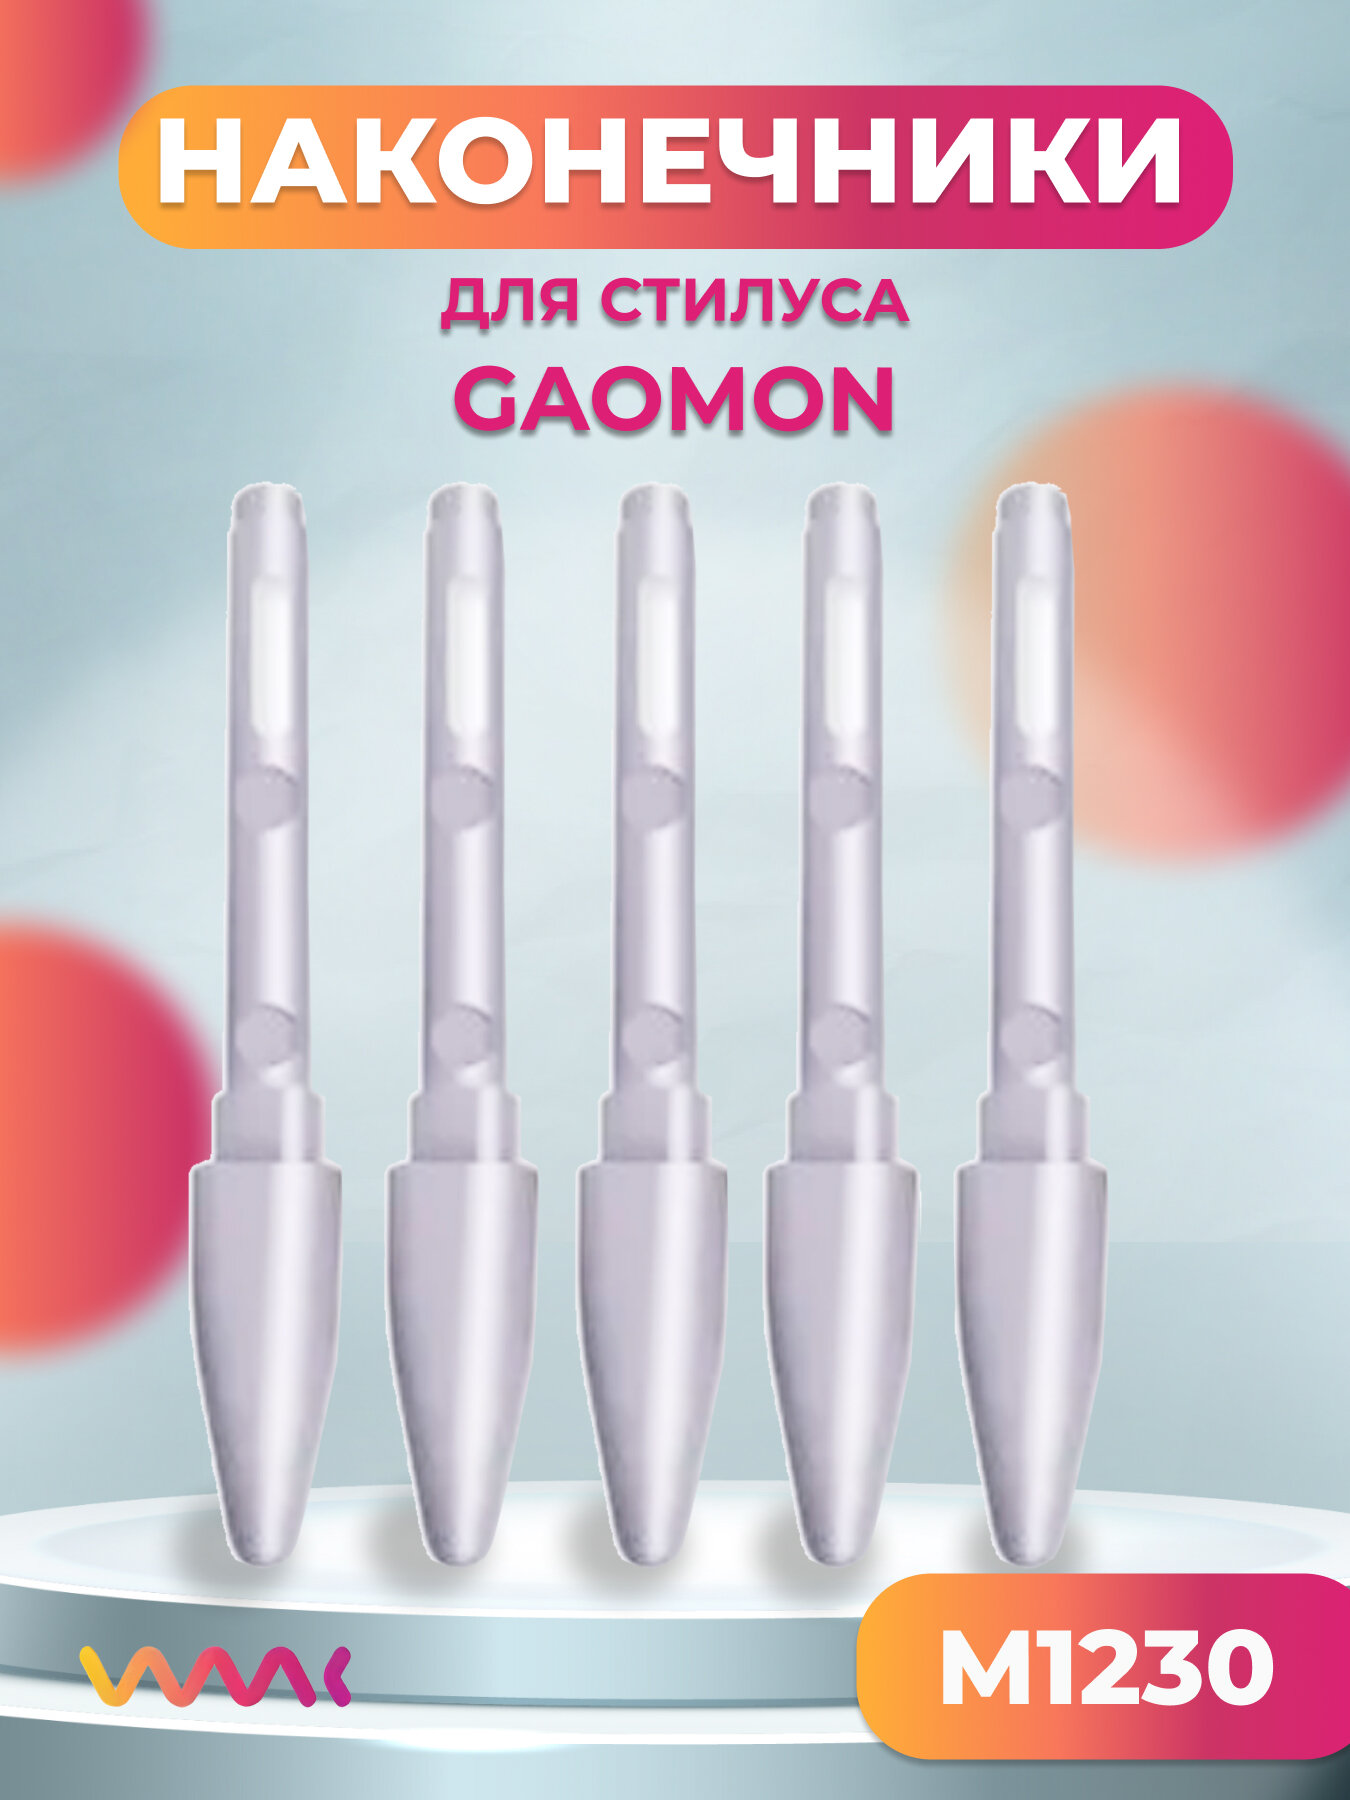 Набор сменных наконечников для пера Gaomon M1230 5 шт.